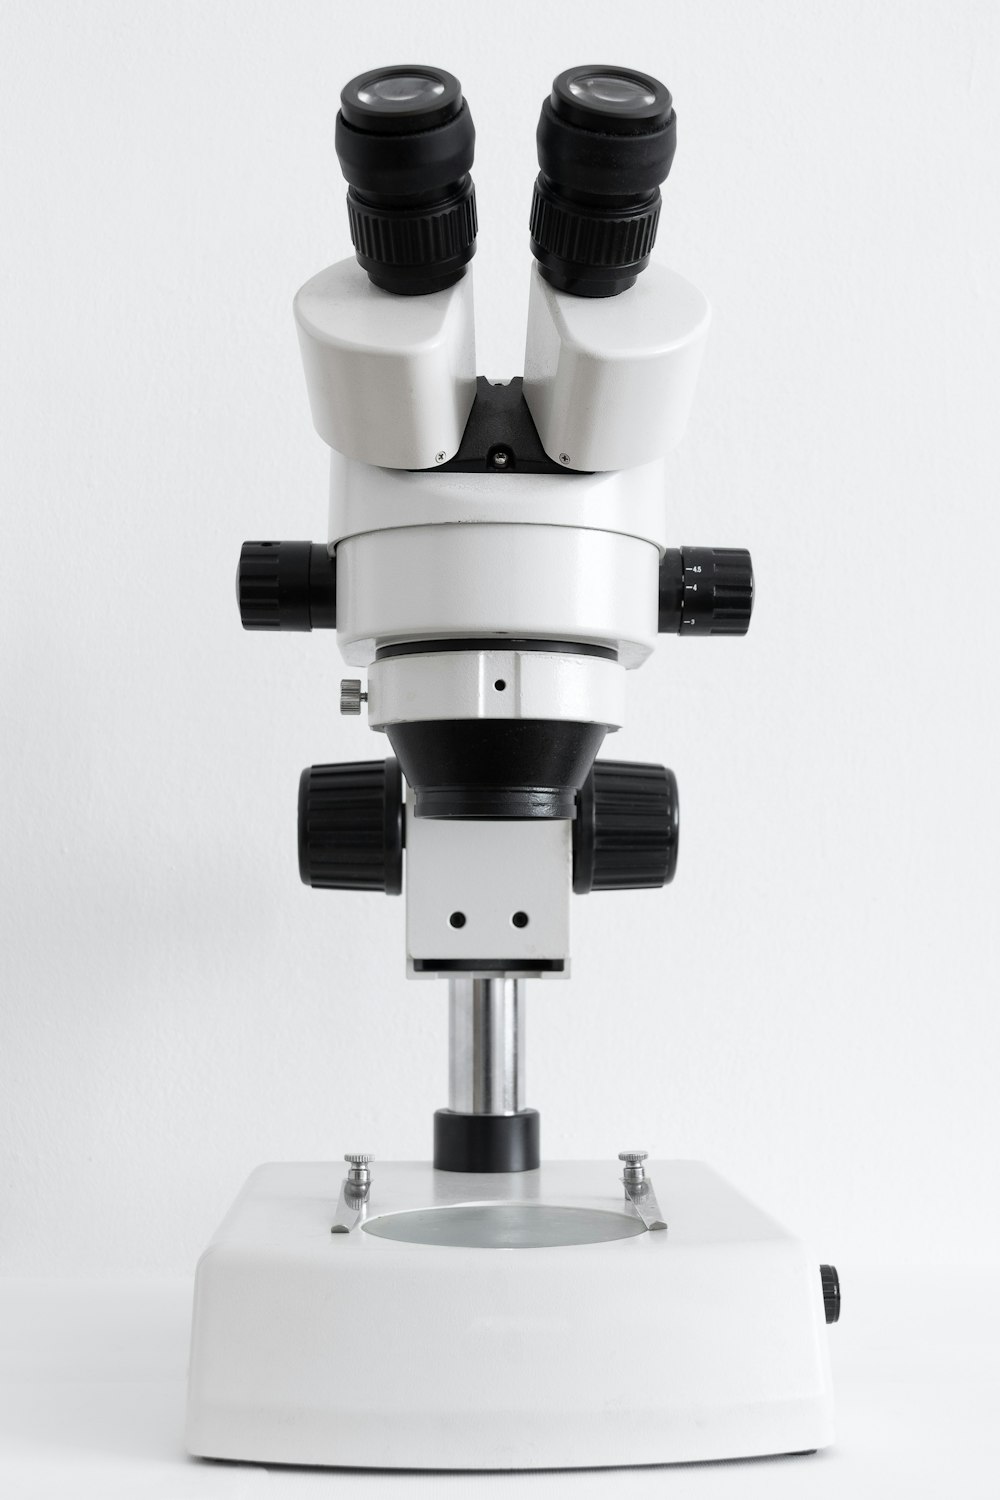 weißes und schwarzes Mikroskop auf weißer Oberfläche